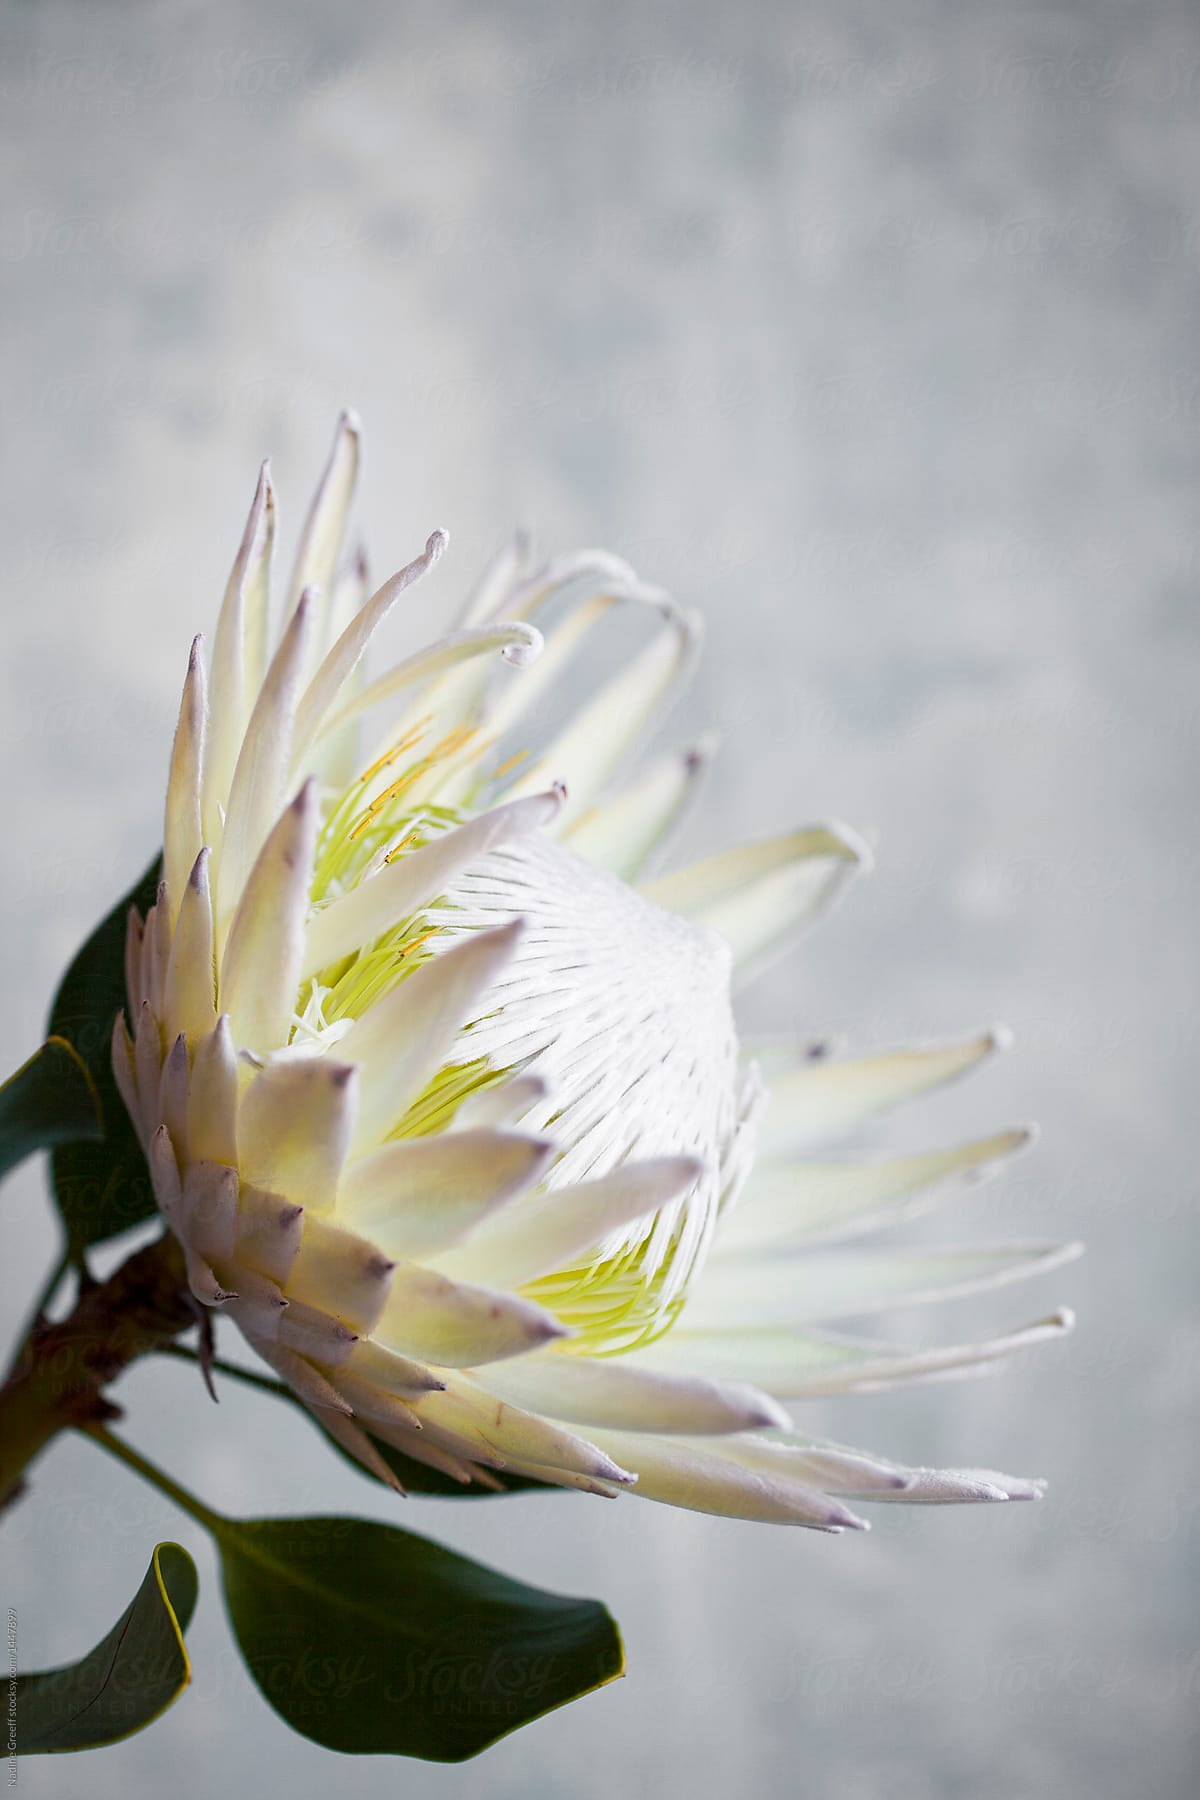 Rare WHITE king protea flower in full bloom